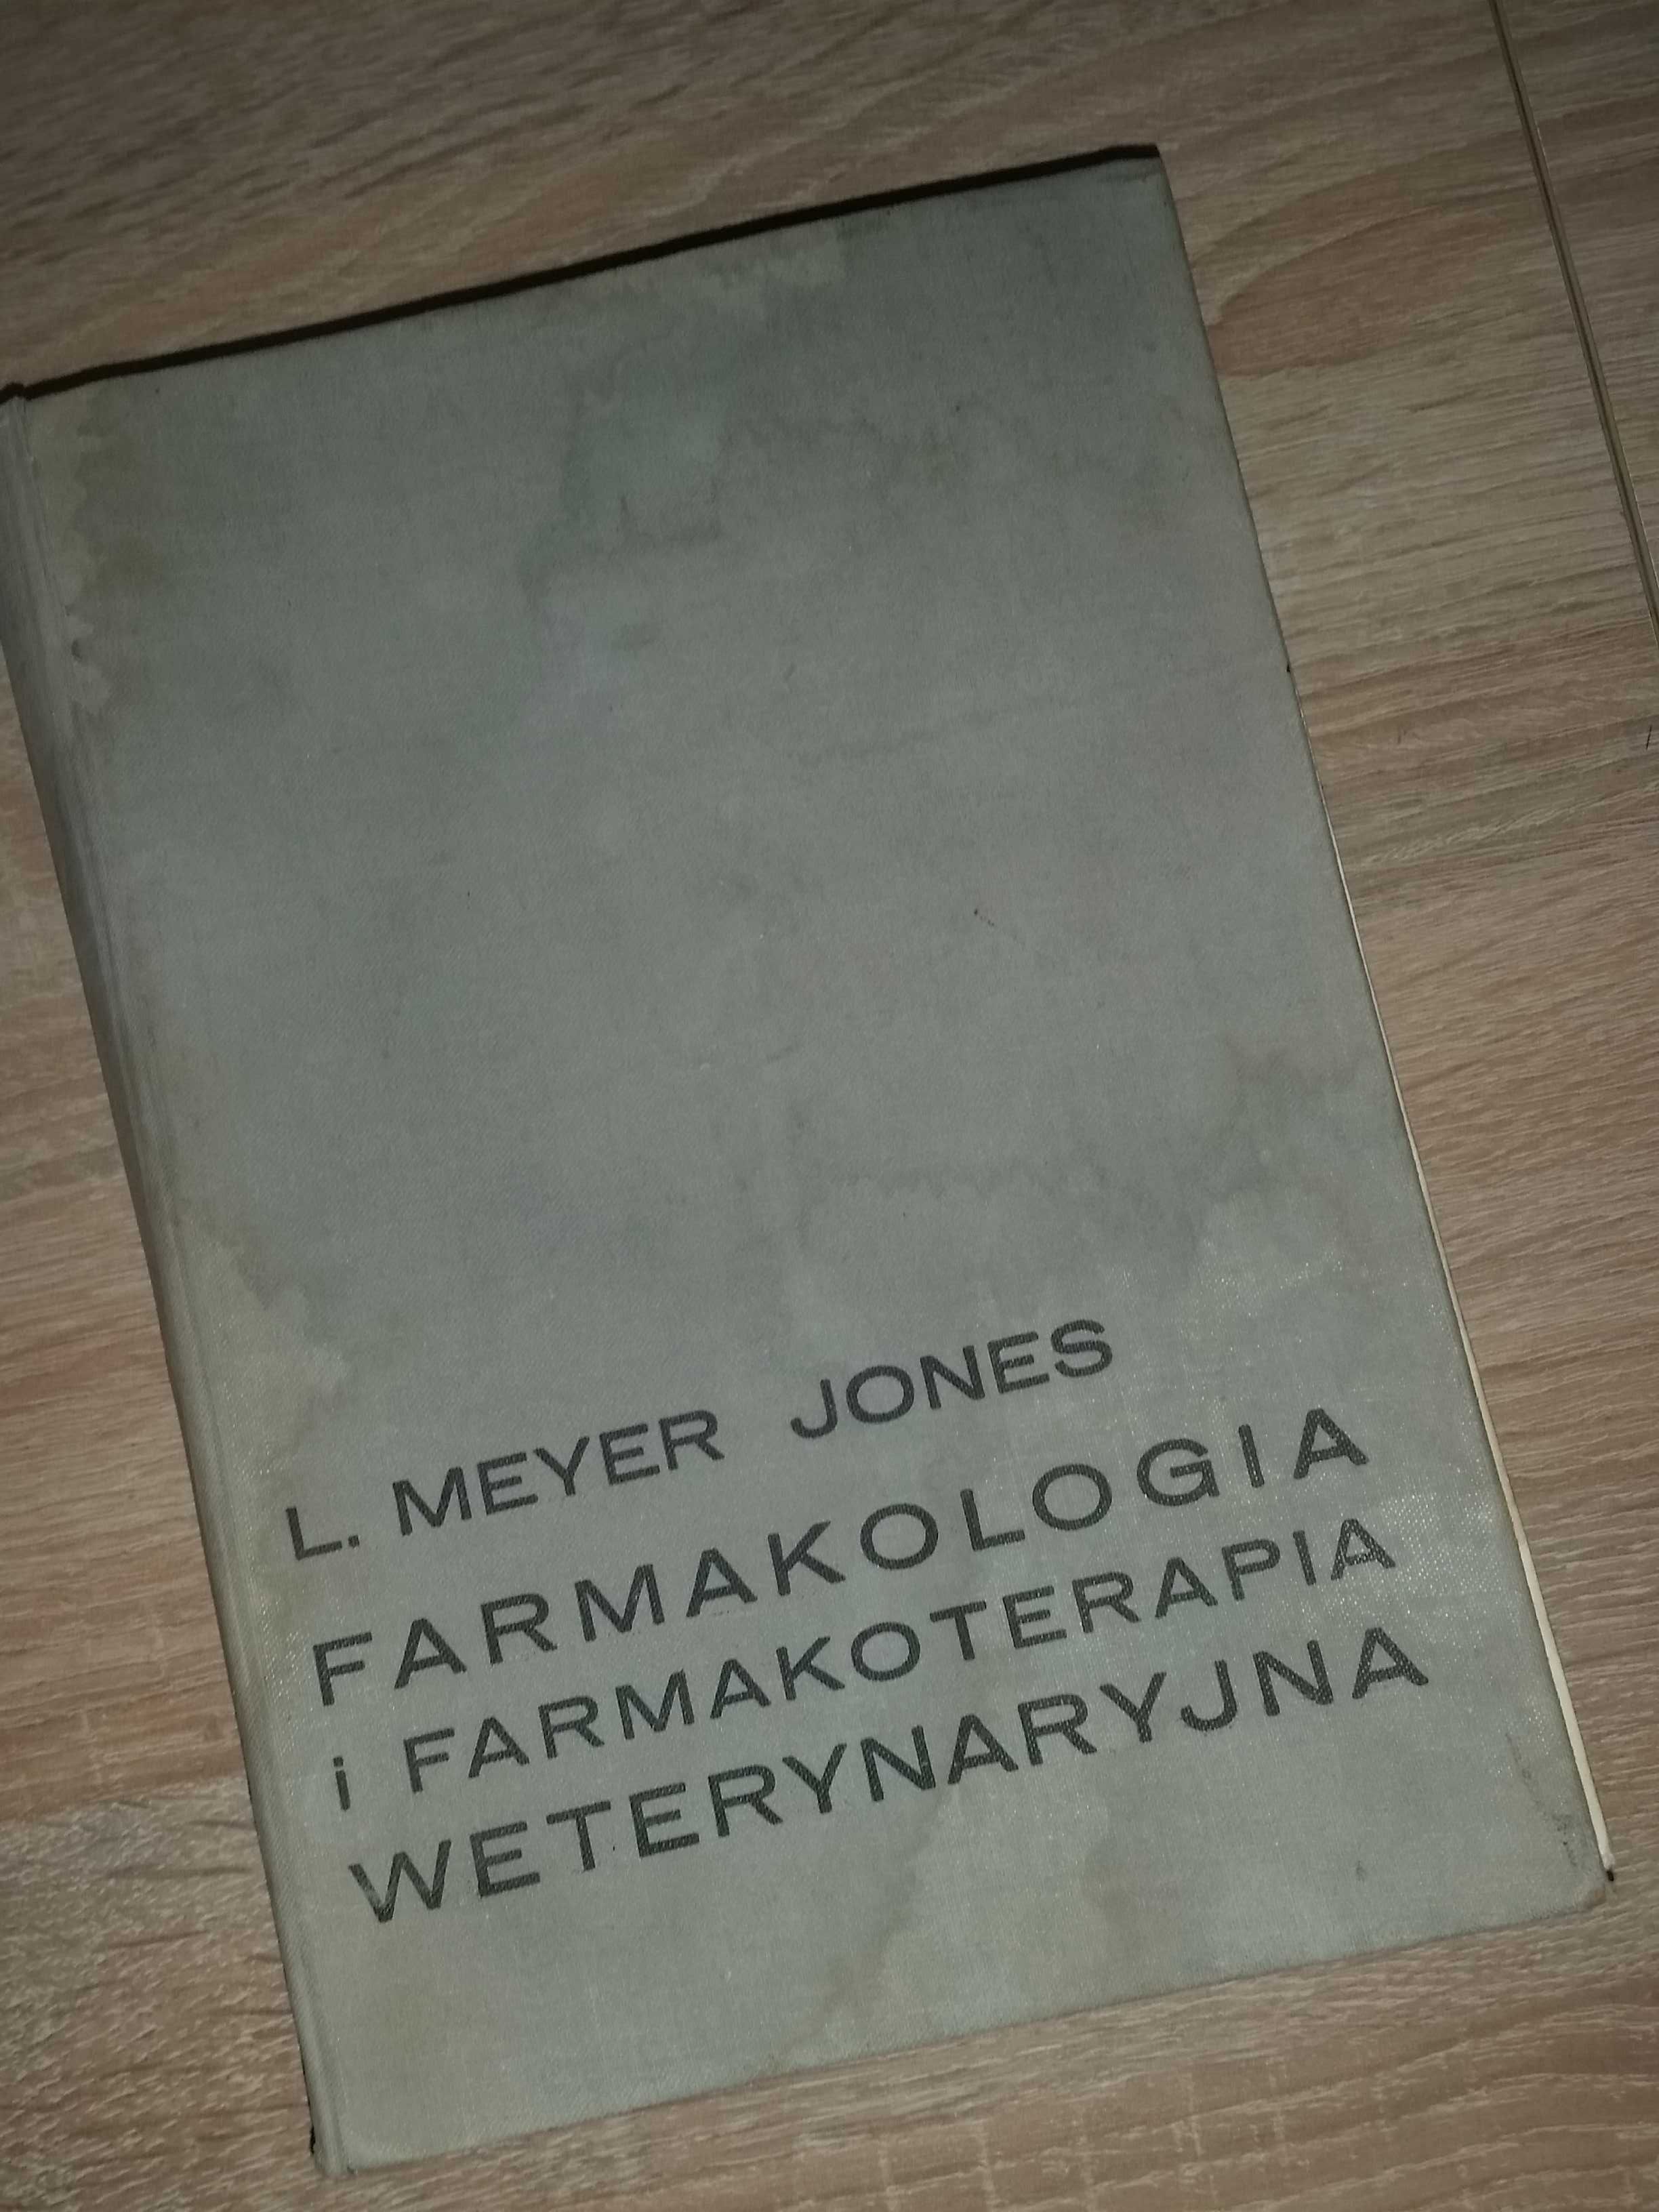 Farmakologia i farmakoterapia weterynaryjna Meyer Jones 1964